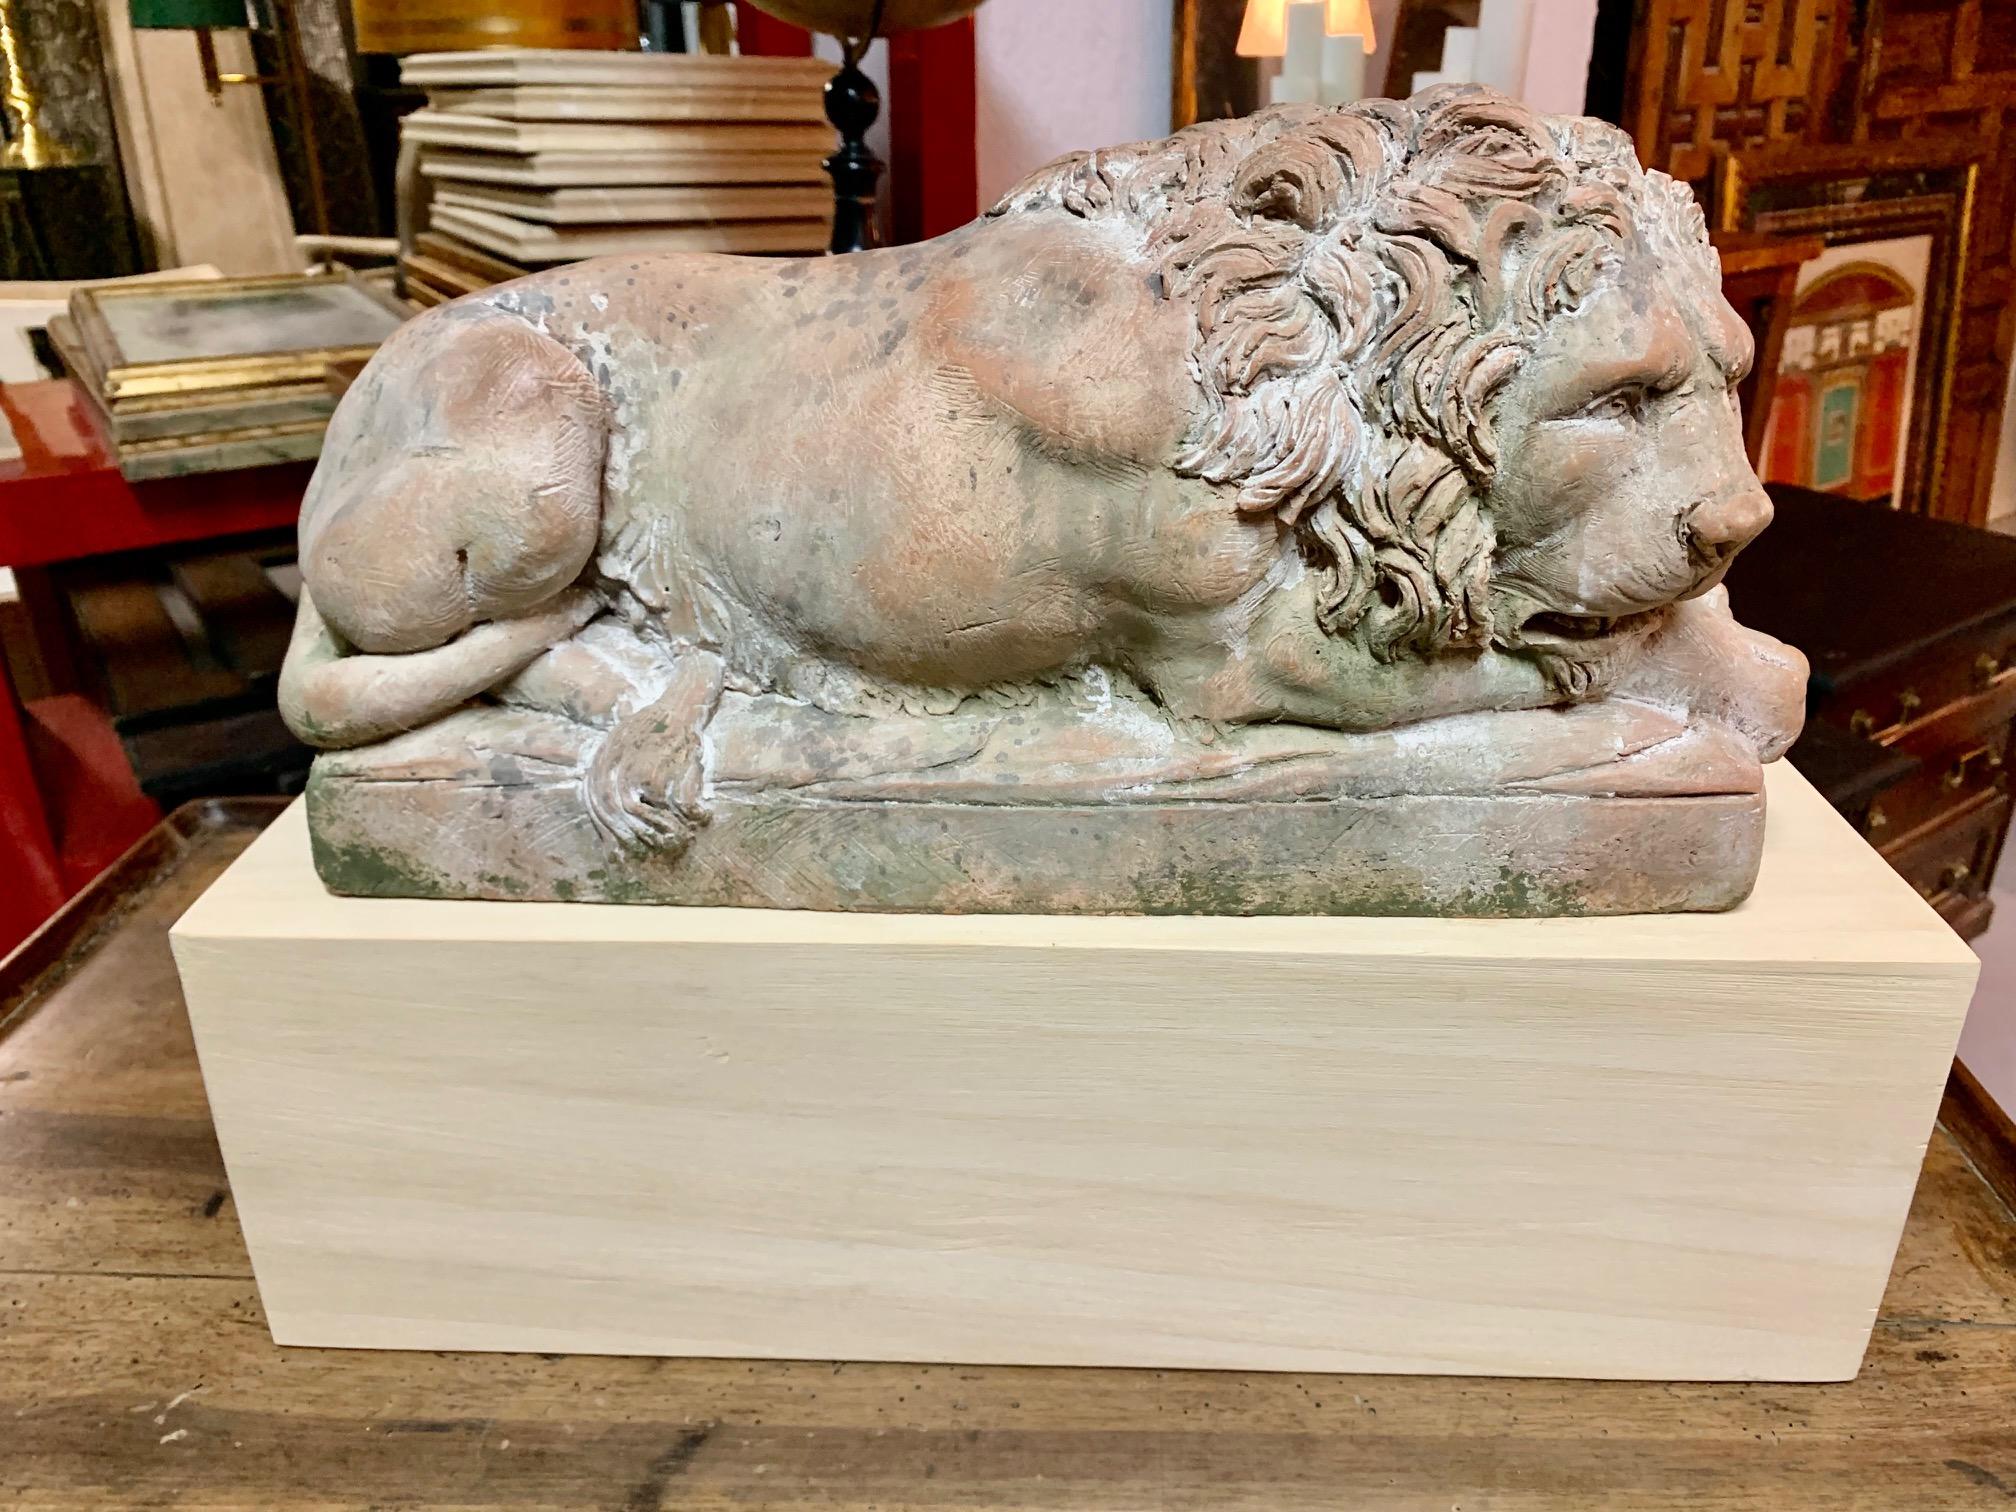 Eine schöne italienische Terrakotta-Skulptur, die einen liegenden Löwen darstellt, ist möglicherweise eine Nachbildung des berühmten Denkmals Der verwundete Löwe in Luzern.